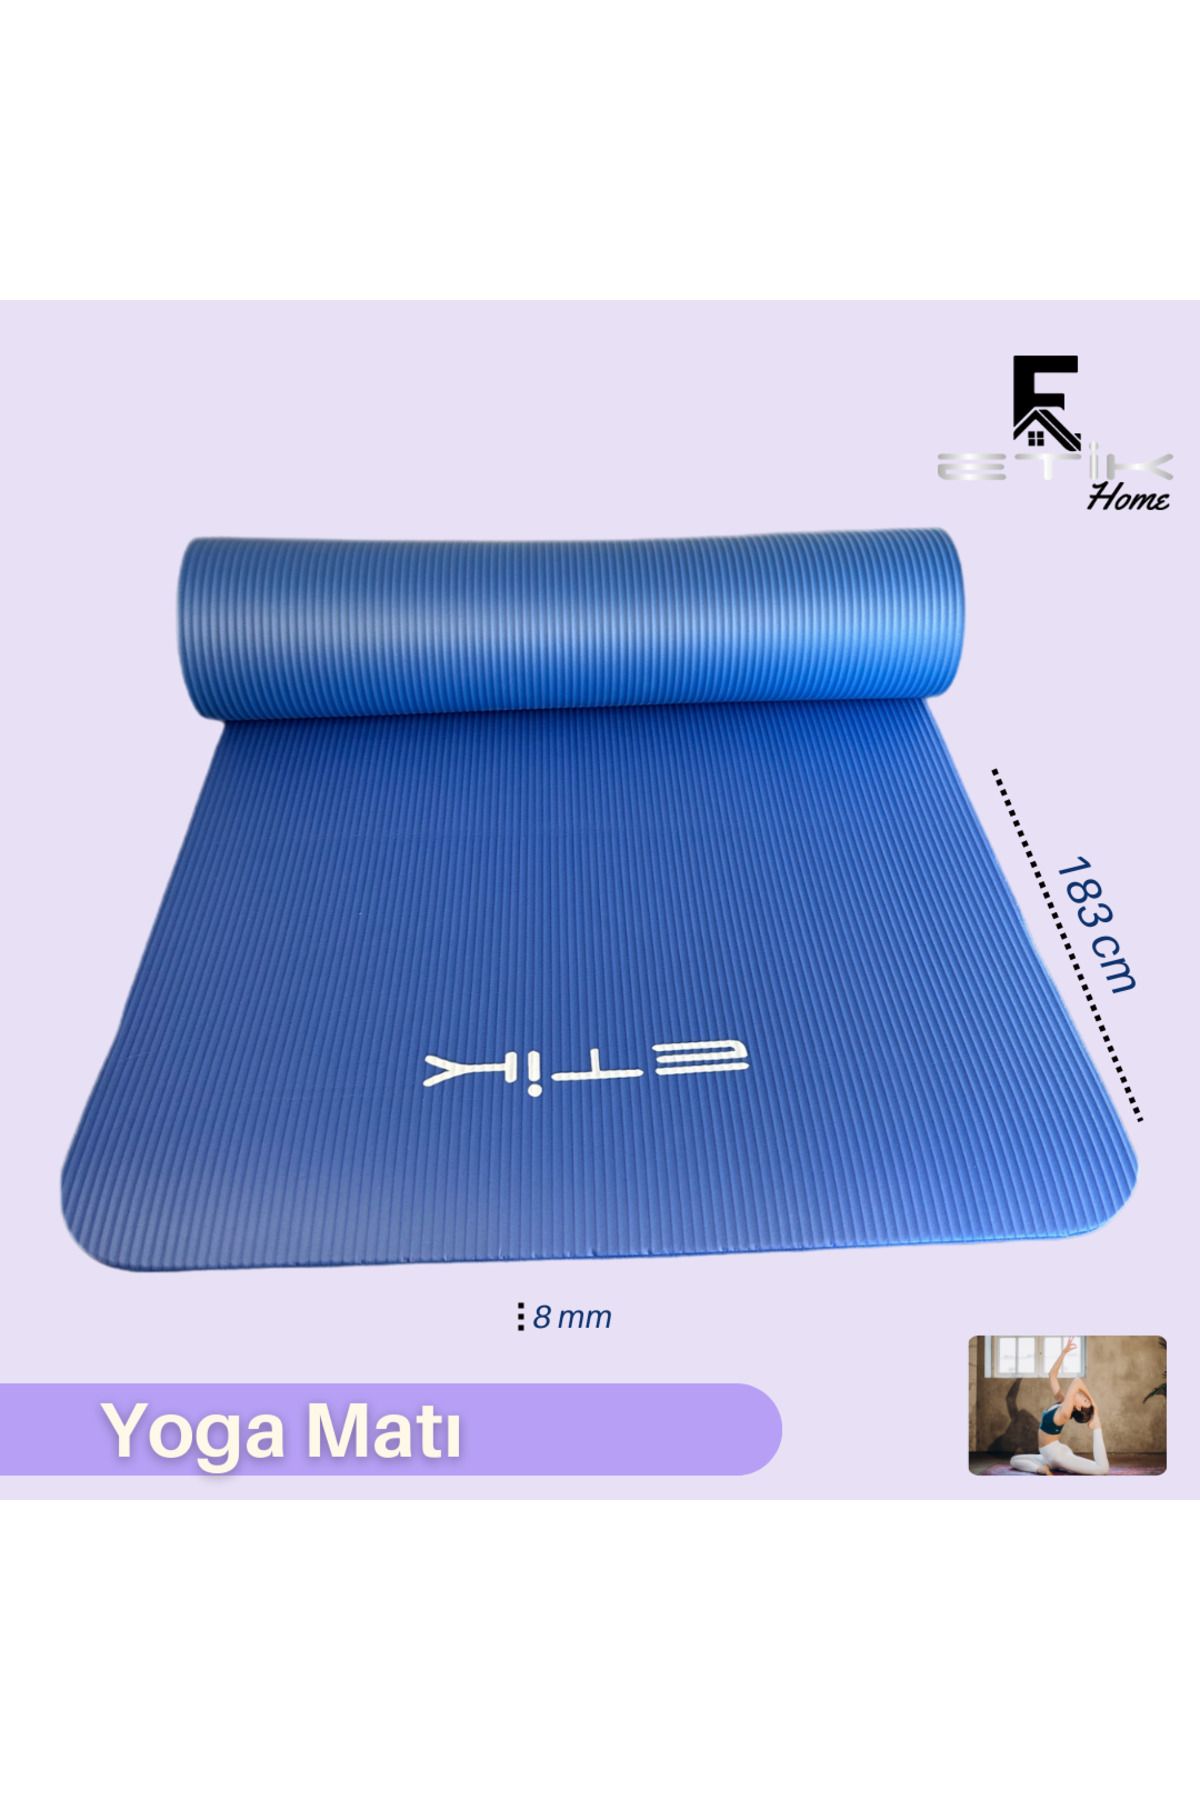 etikhome Yoga Matı 8 mm Taşıma Askılı Yoga Minderi ETK100000